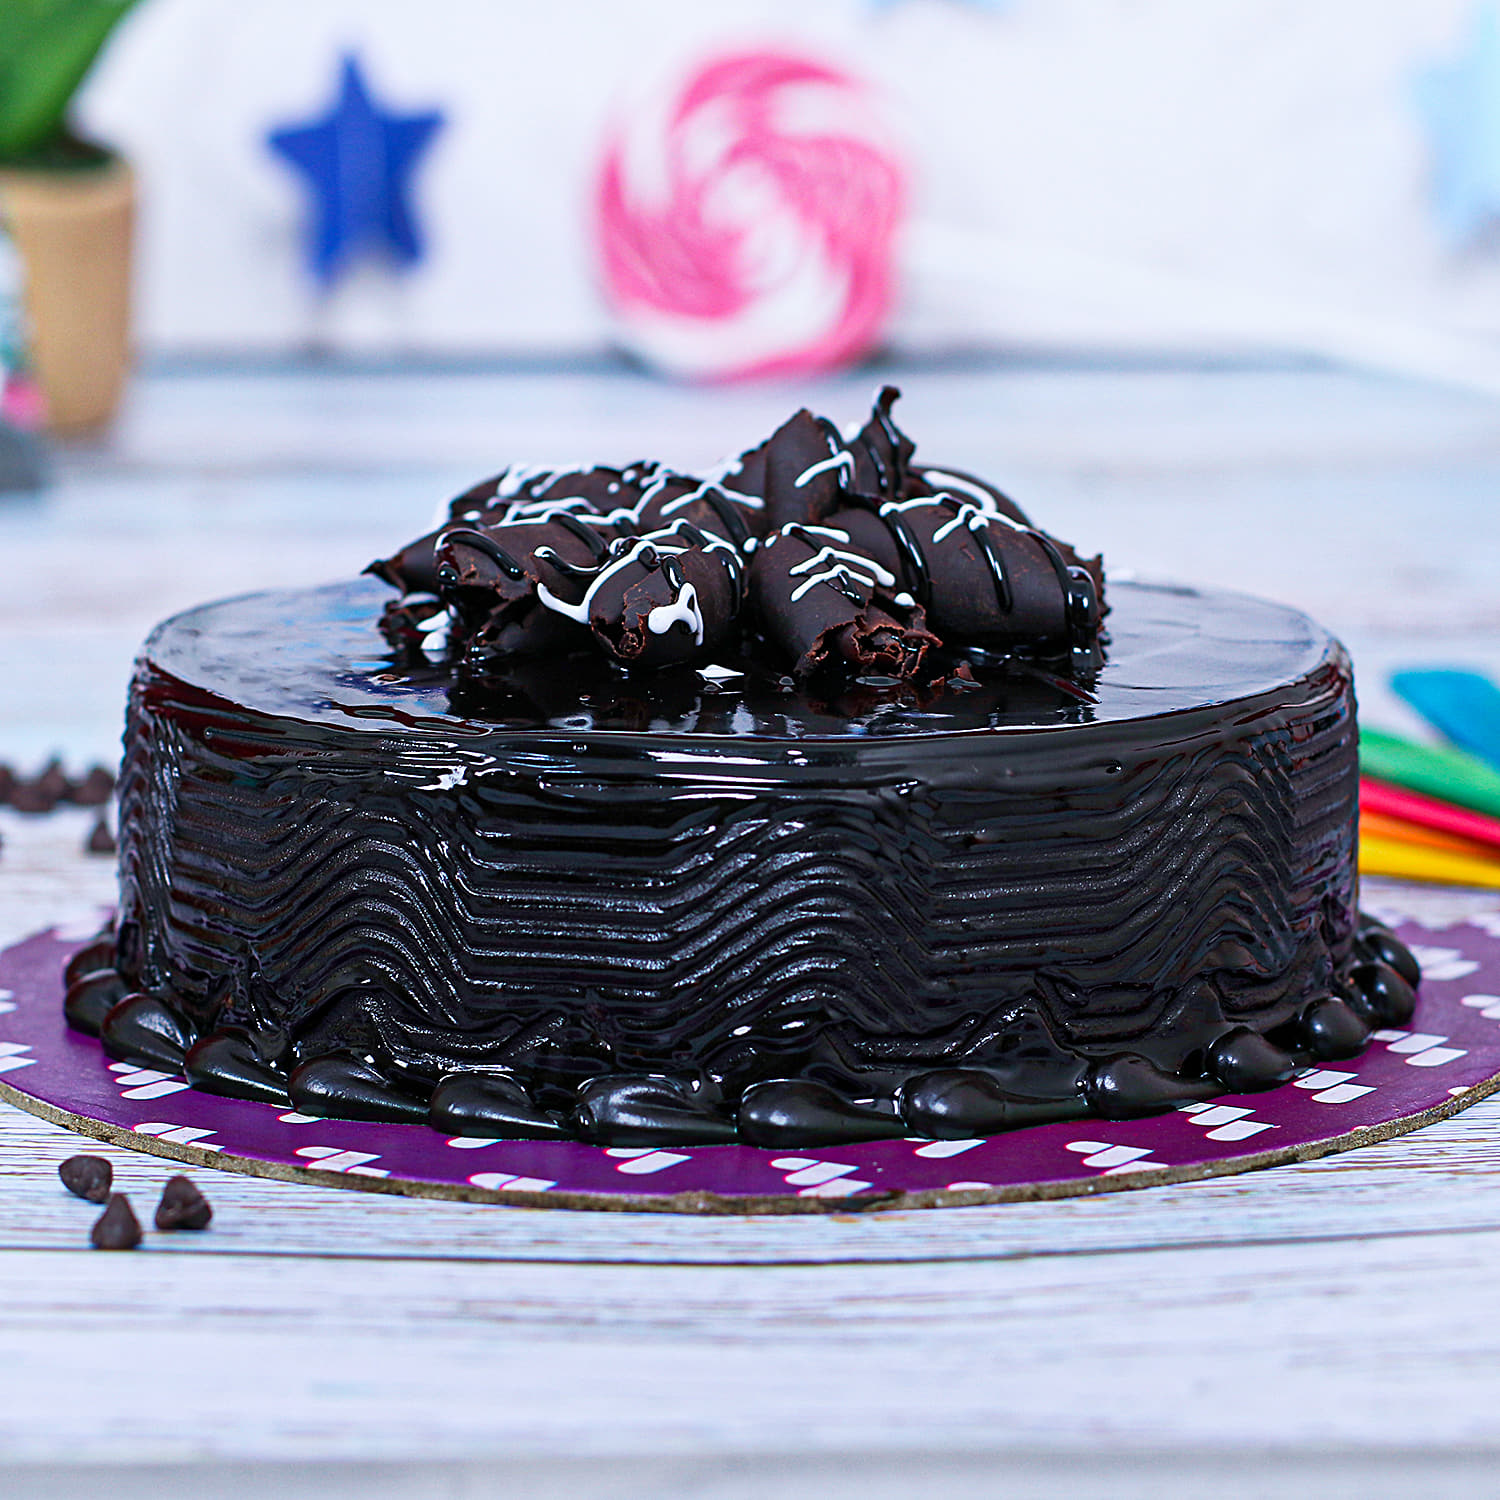 Dark Chocolate cake in pune | Dark Chocolate cake in Pune ww… | Flickr